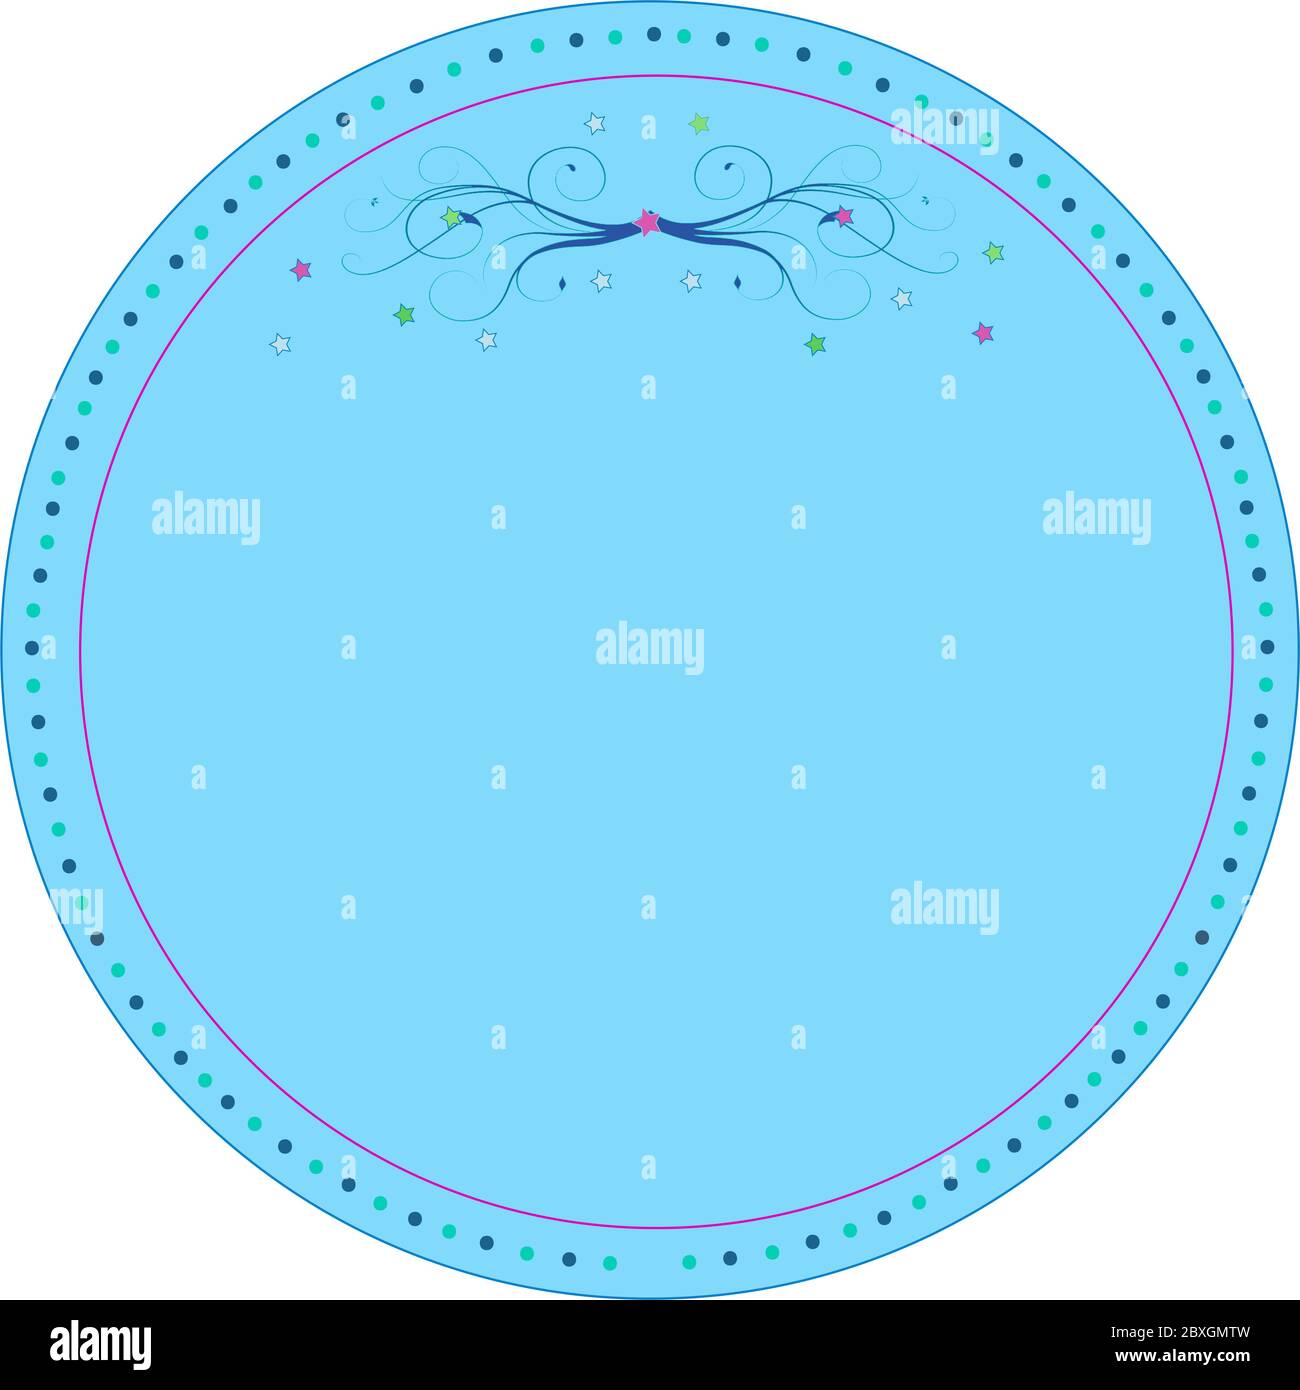 Image graphique circulaire bleue de type emblème avec bordure en pointillés isolée sur fond blanc. Design Swirl en haut au centre. Banque D'Images